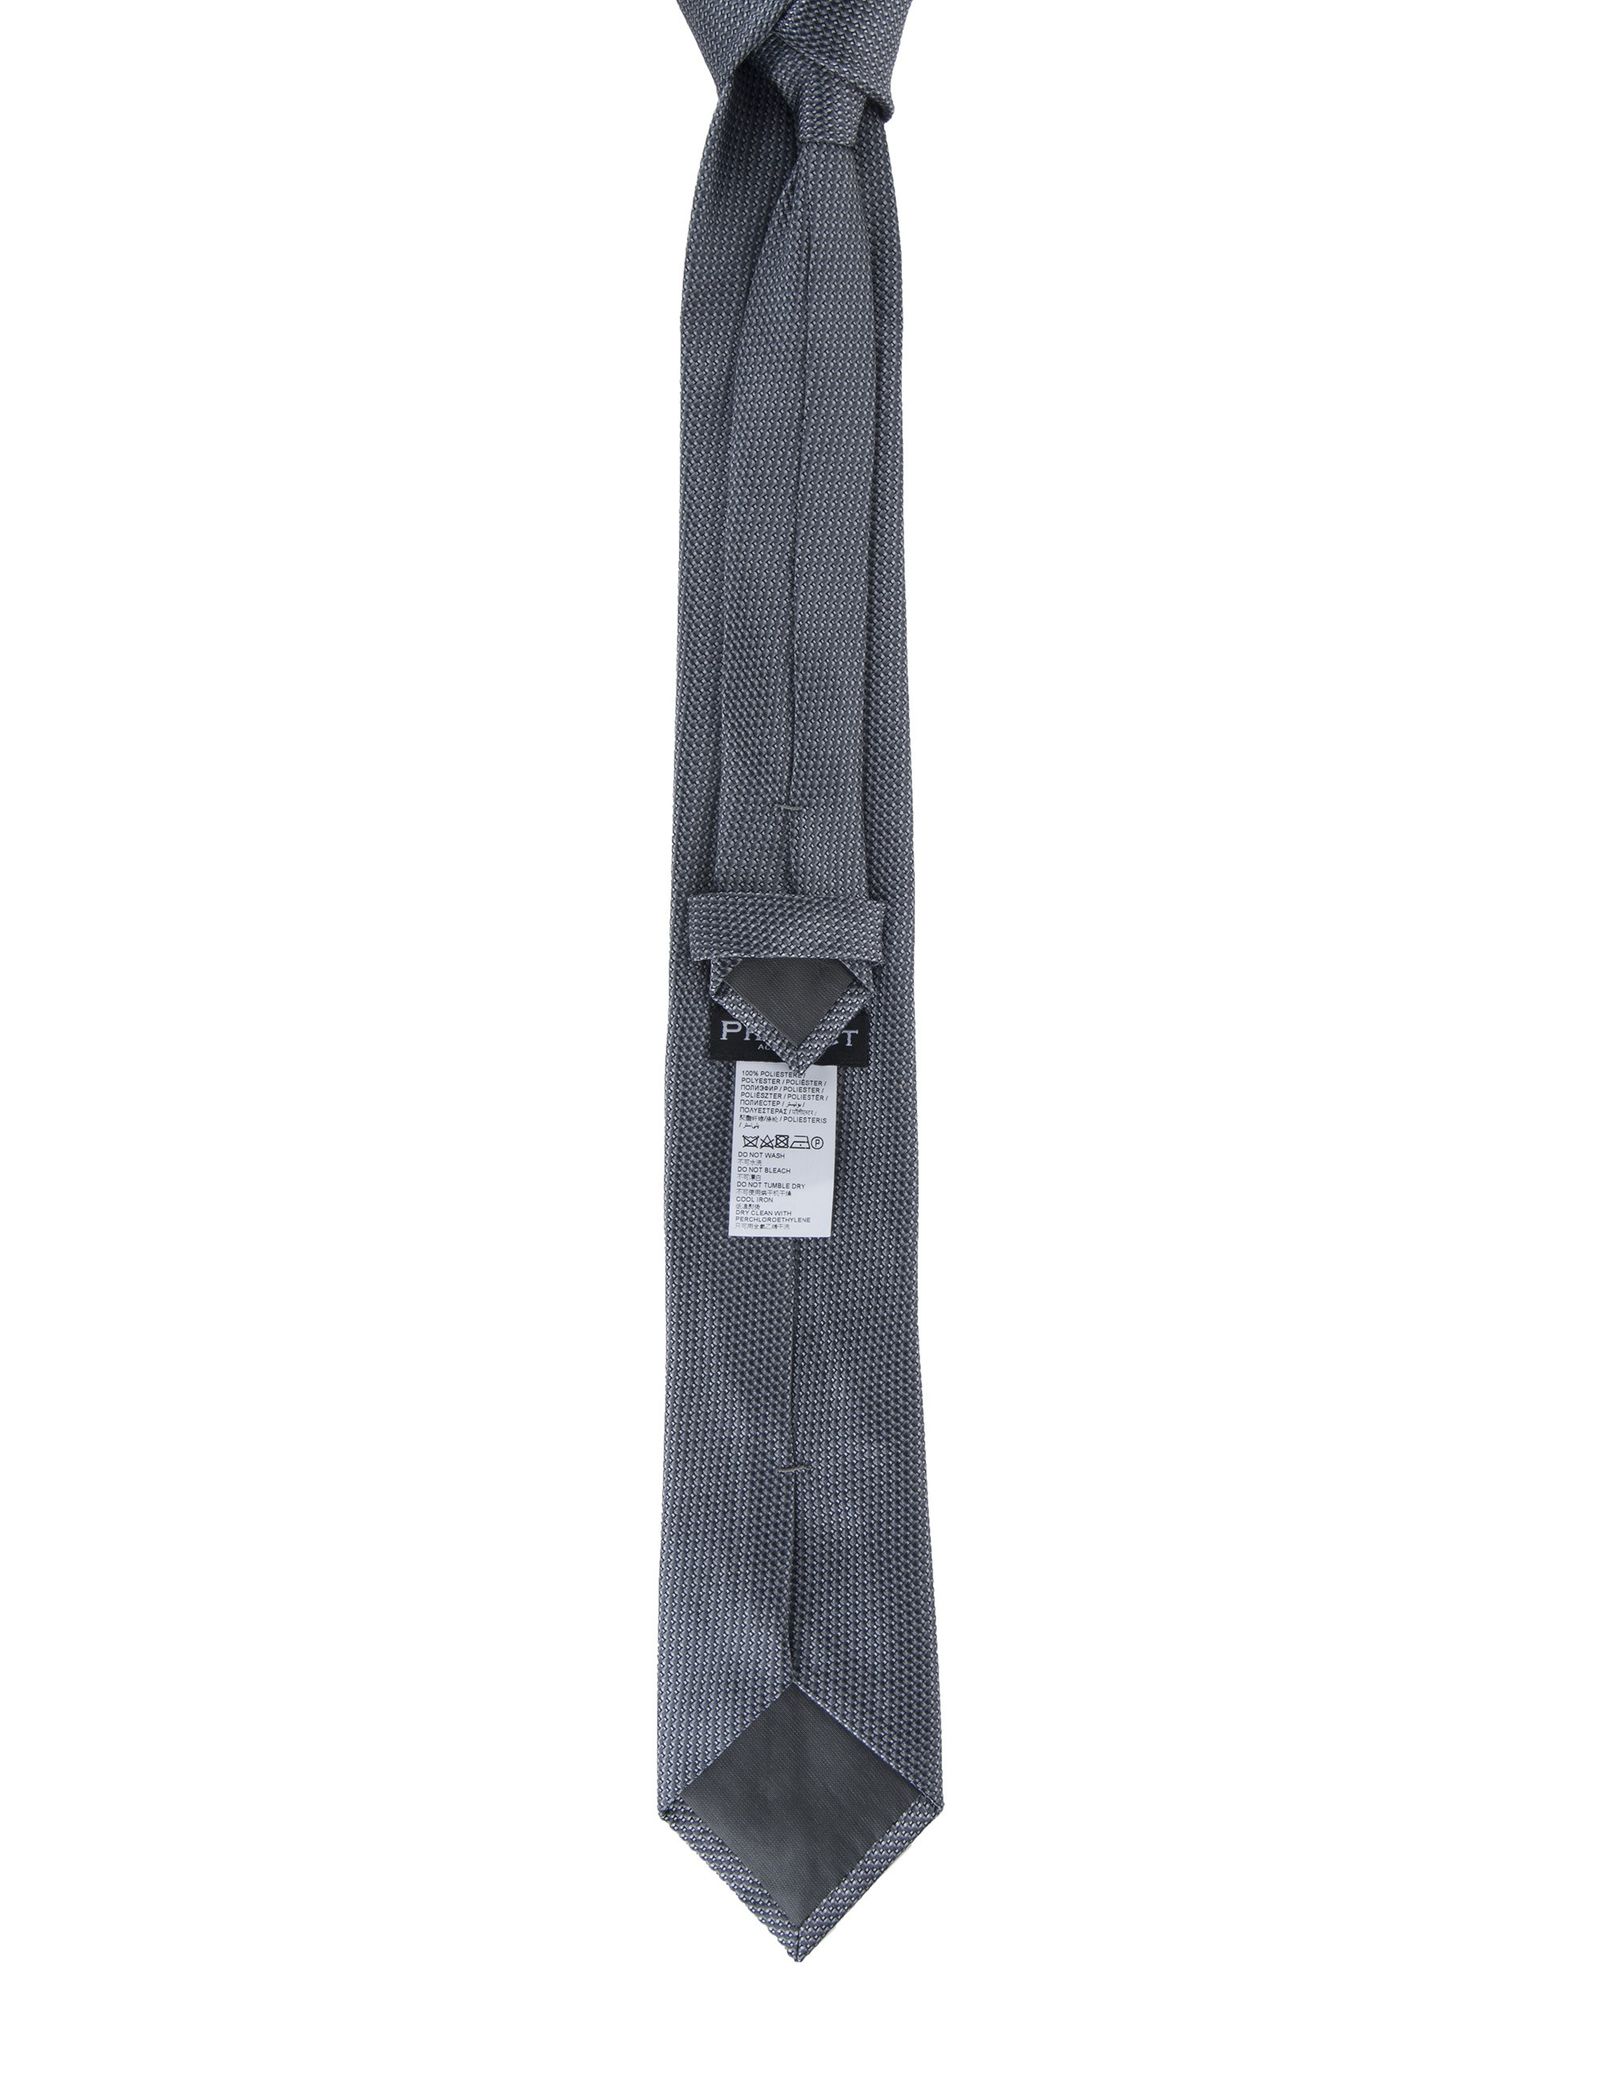 کراوات طرح دار مردانه - یوپیم - طوسي - 3